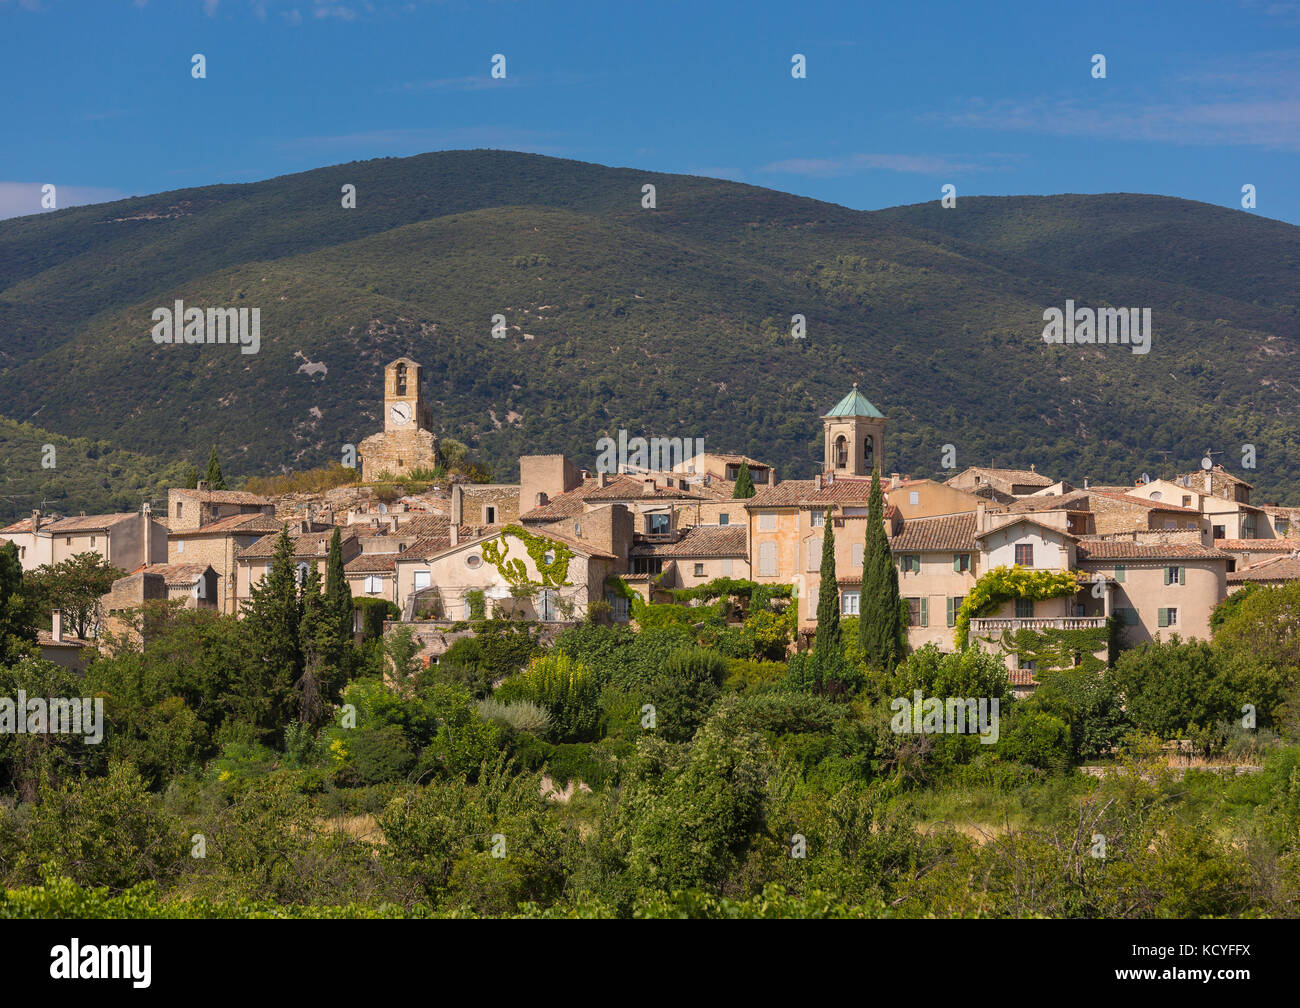 In Lourmarin, Provence, Frankreich - Lourmarin, einem Dorf in der Landschaft von Luberon, Region Vaucluse. Stockfoto